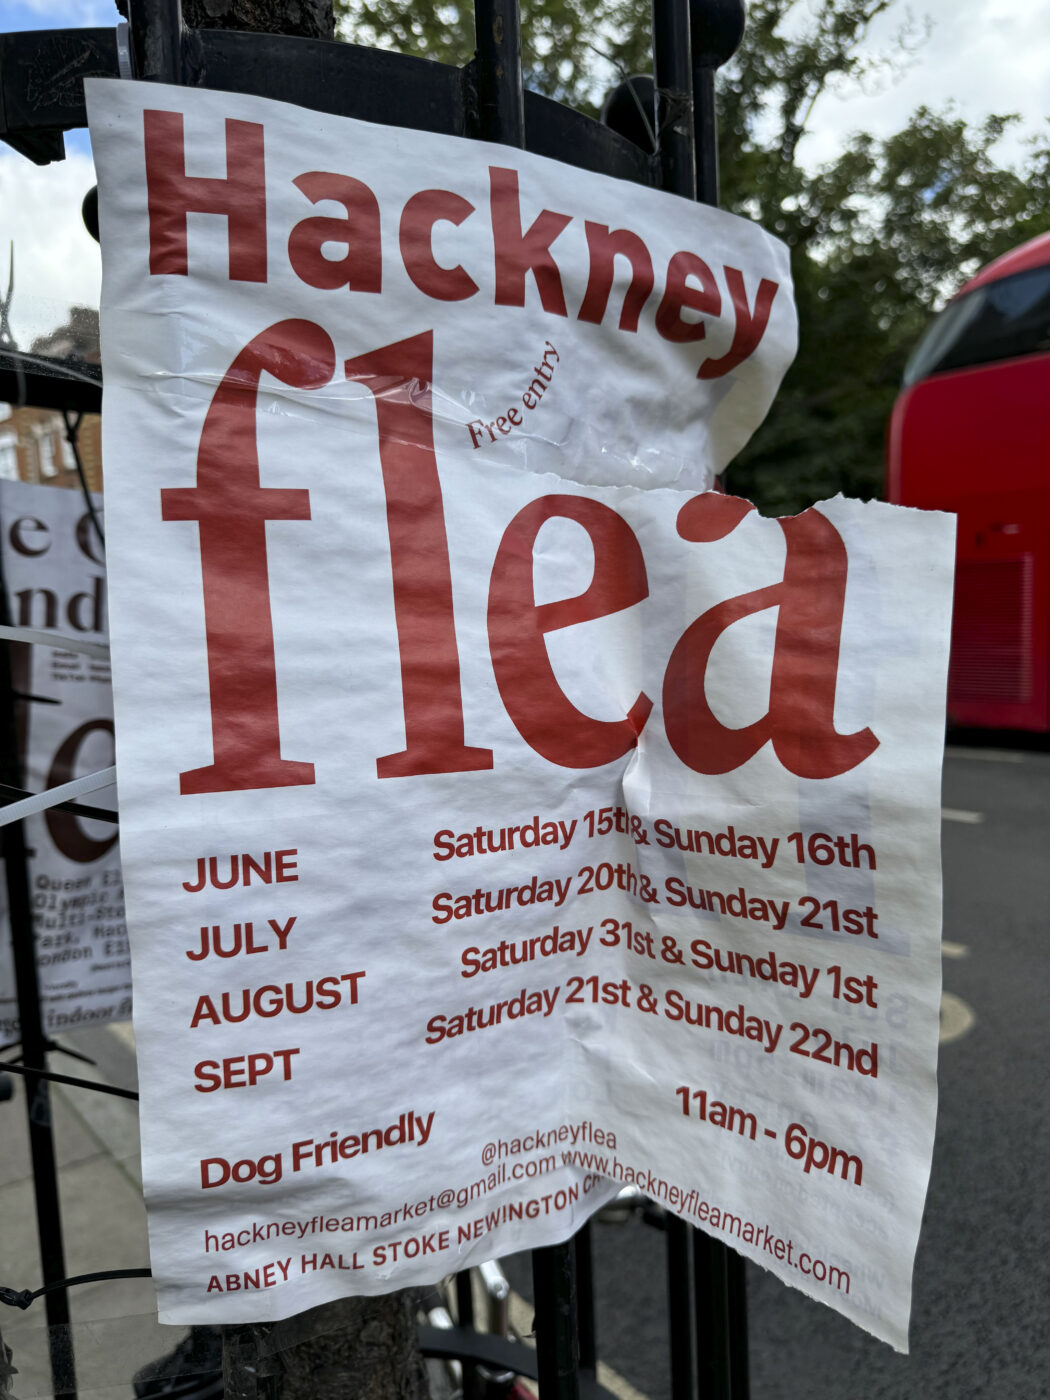 Hackney Flea market